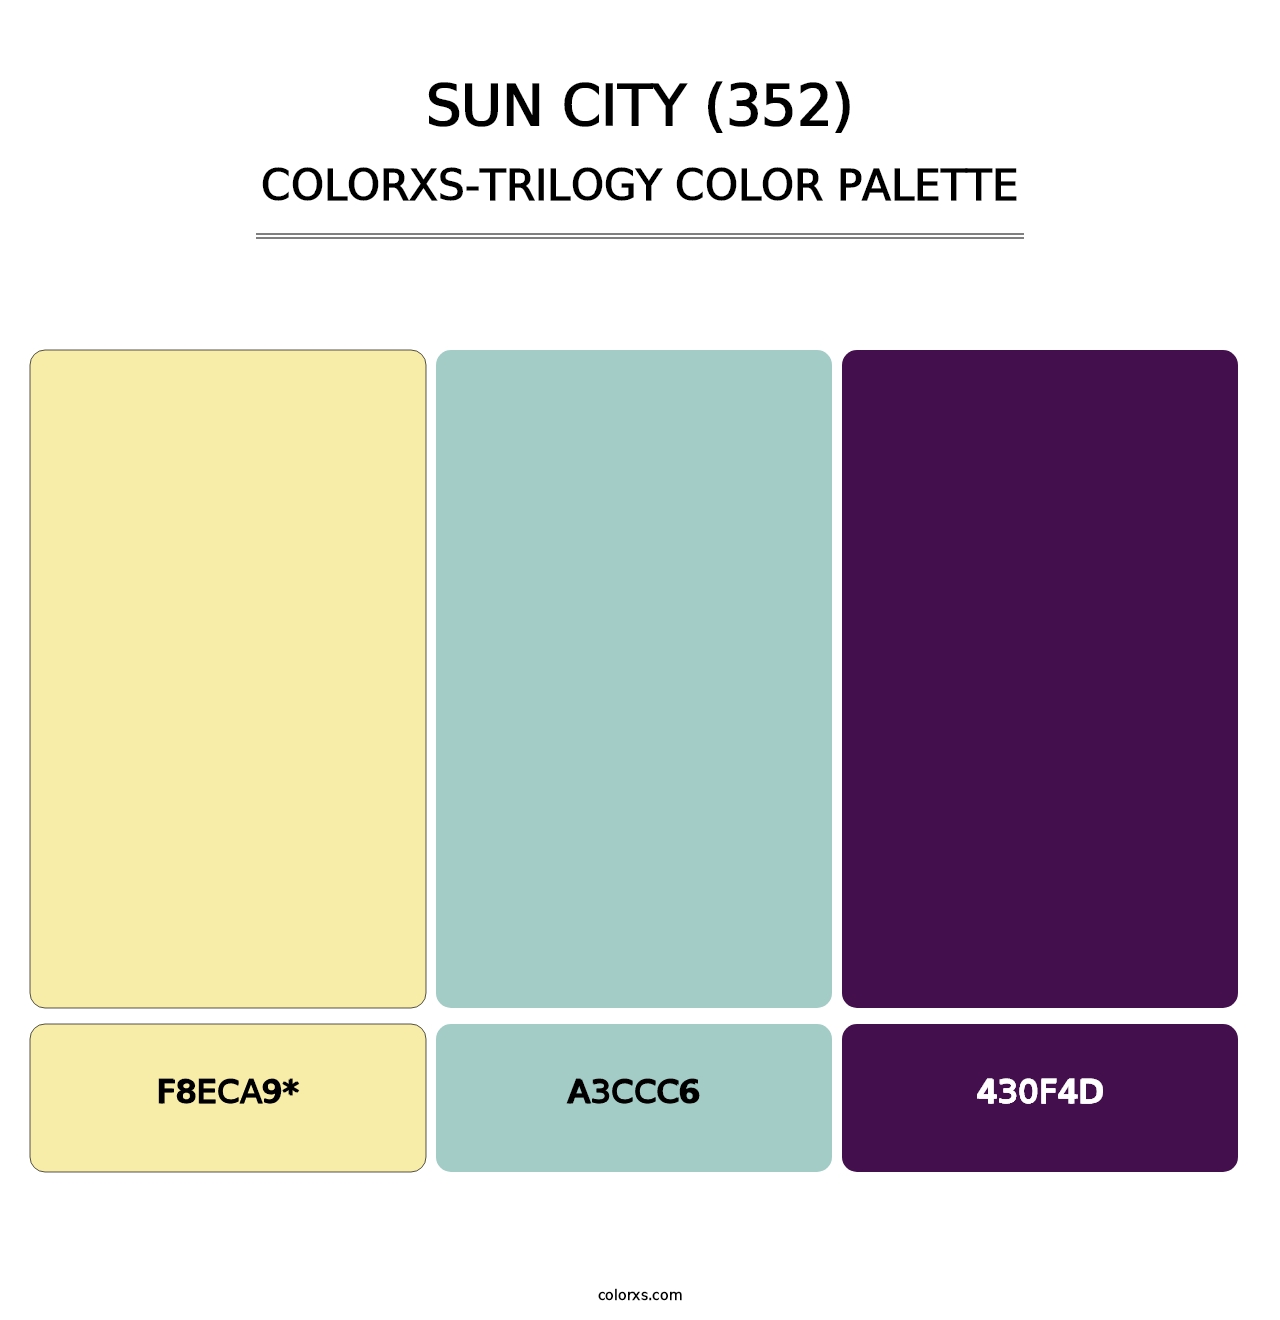 Sun City (352) - Colorxs Trilogy Palette